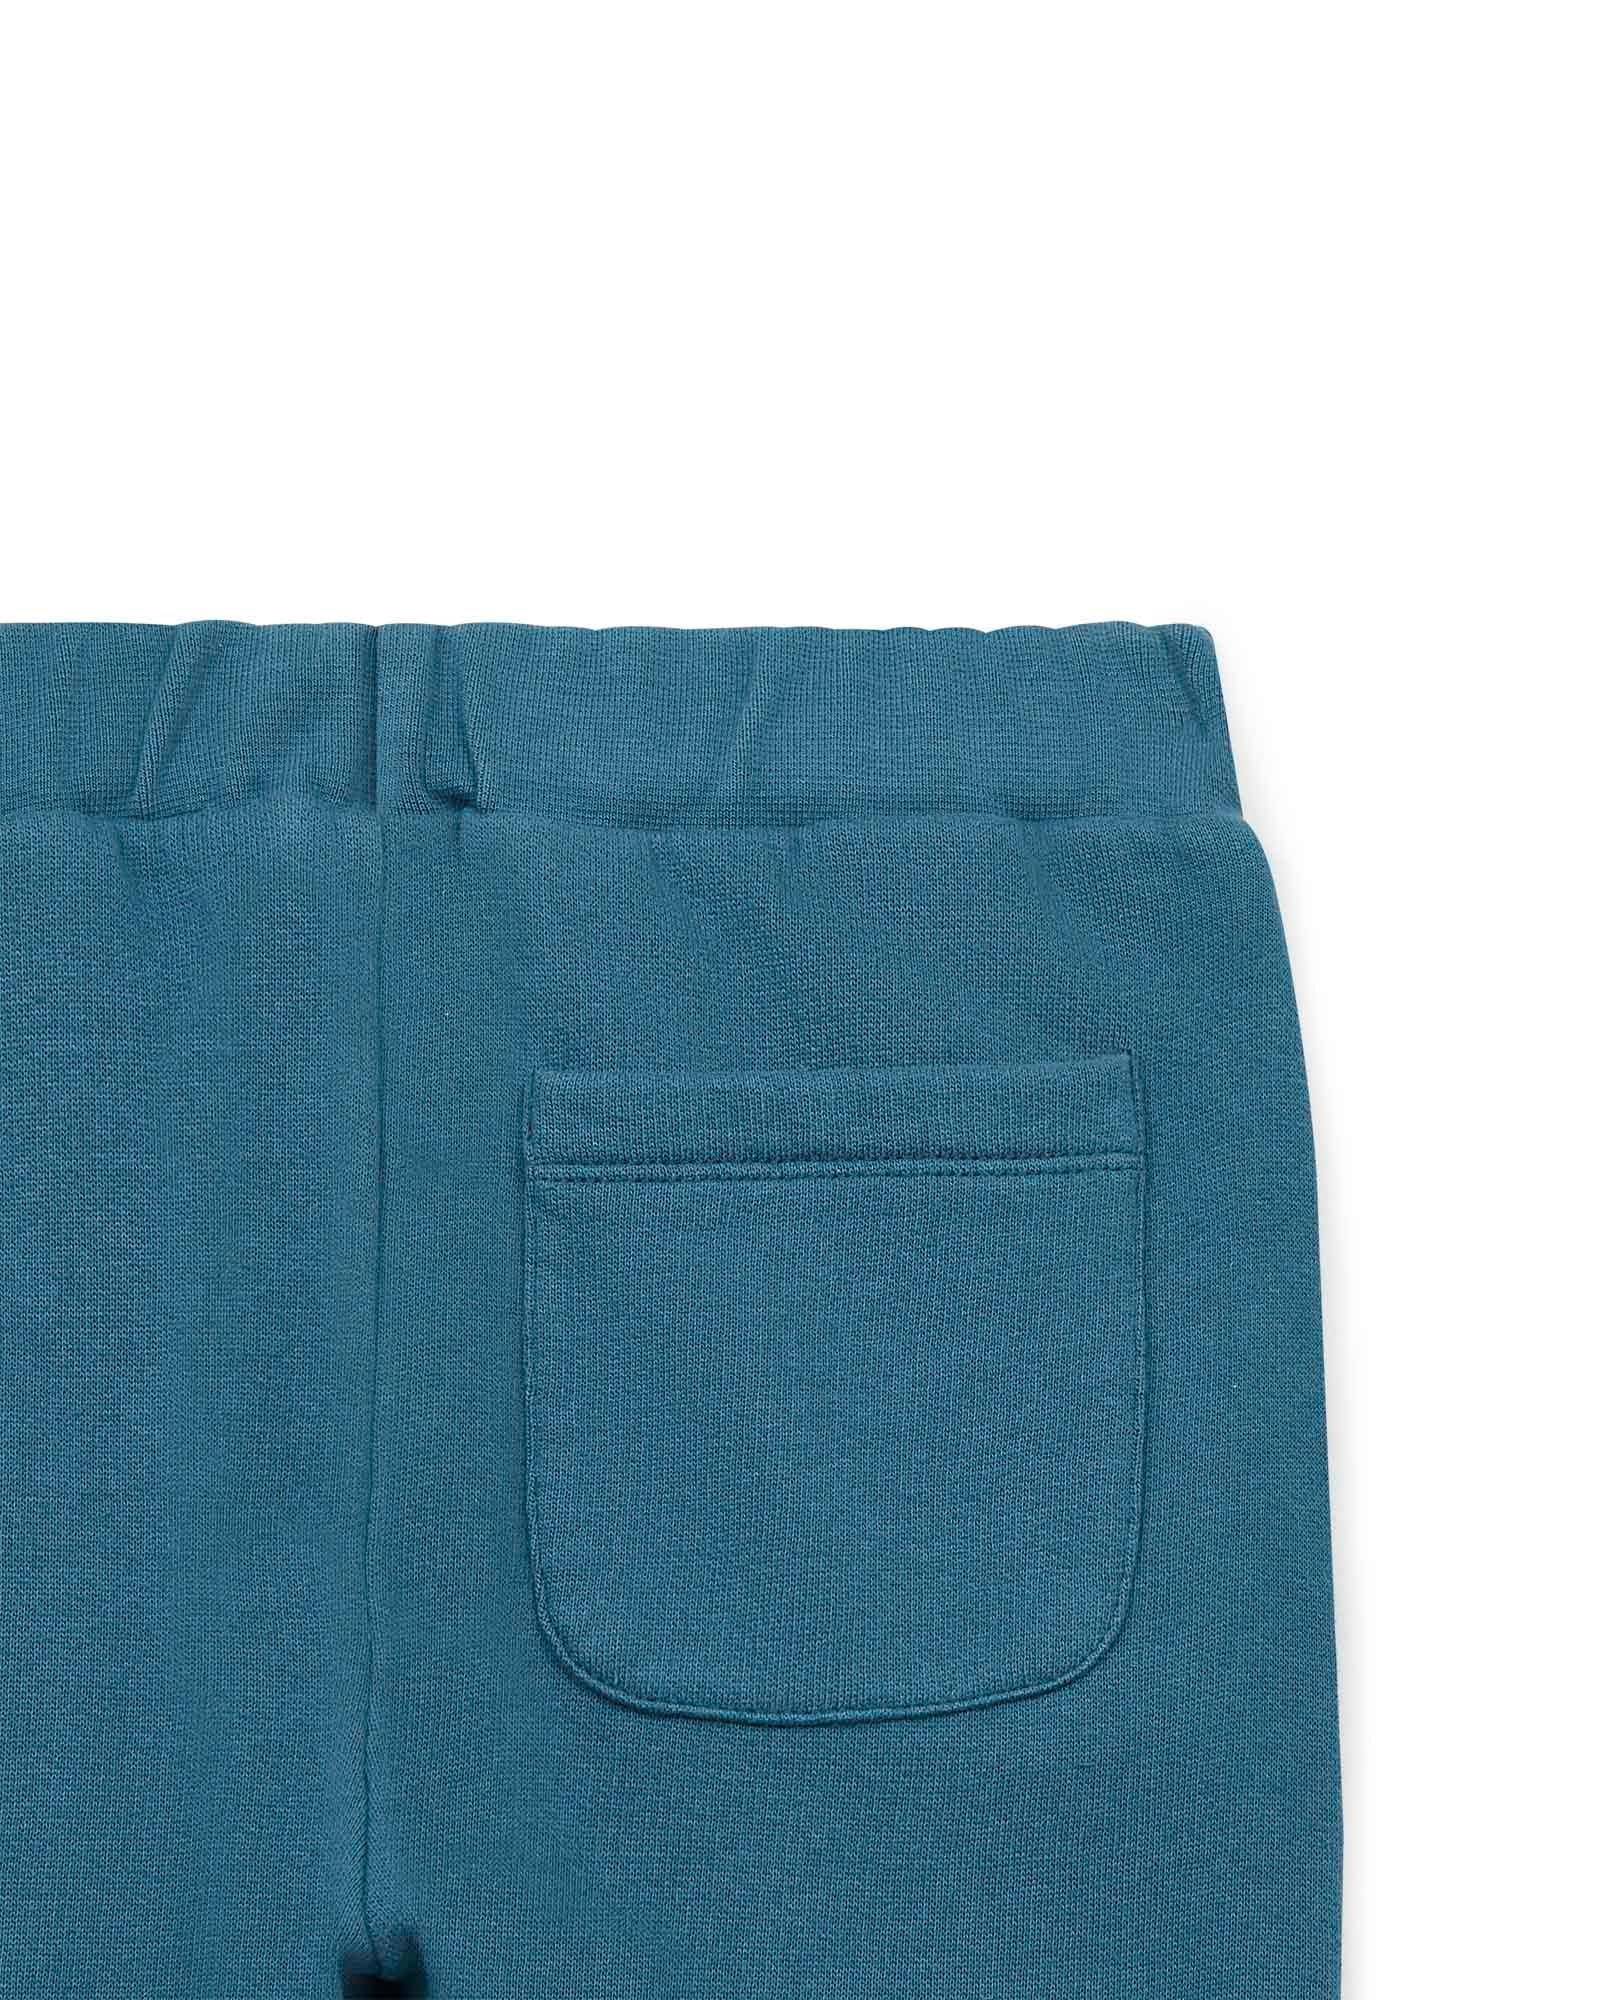 Pantalon jogging bleu en 100% coton